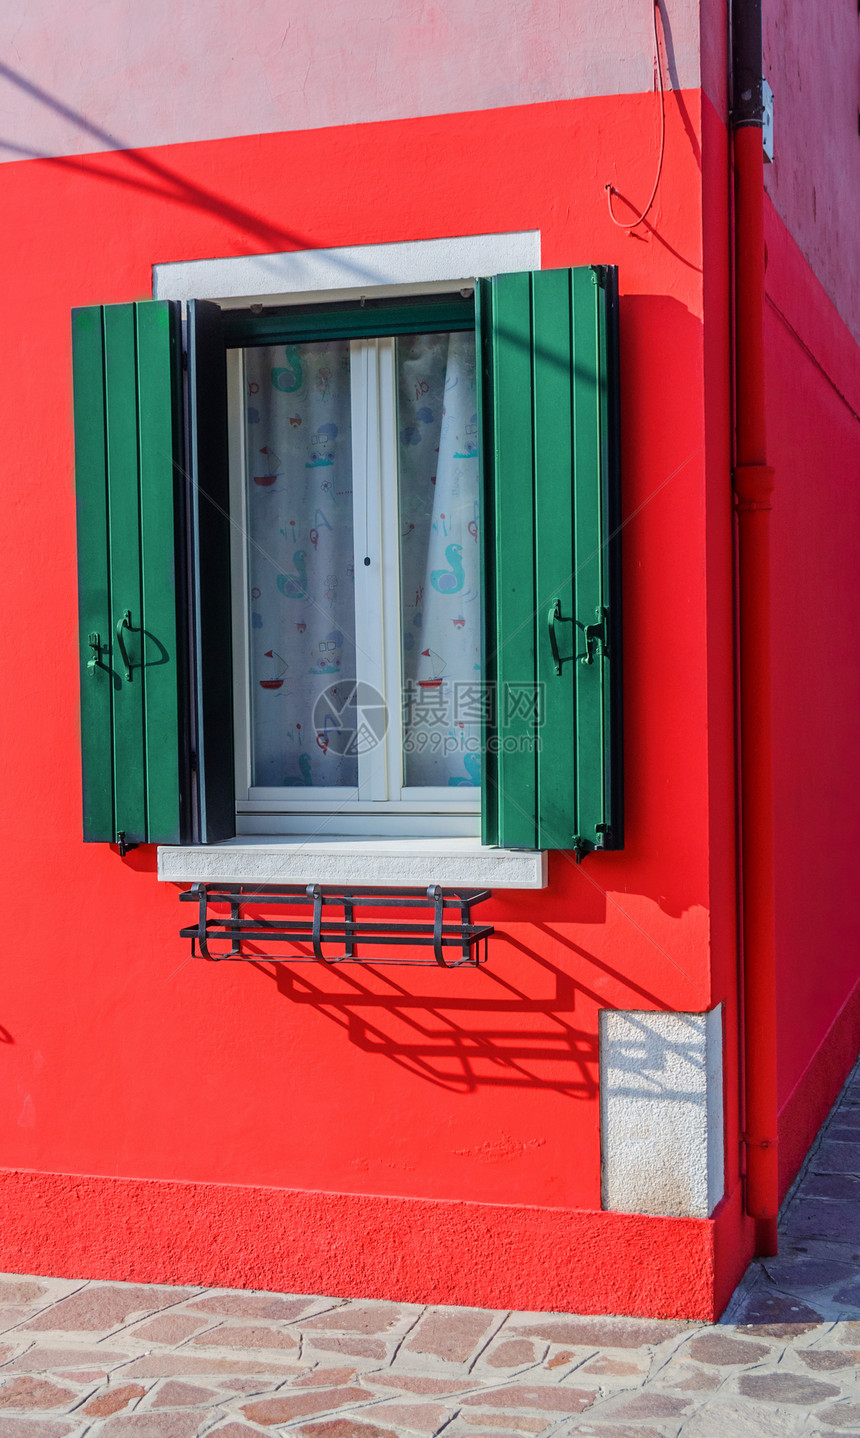 意大利威尼斯布罗拉诺多姿多彩的房屋建筑花朵村庄游客花盆窗户百叶窗蓝色文化房子图片